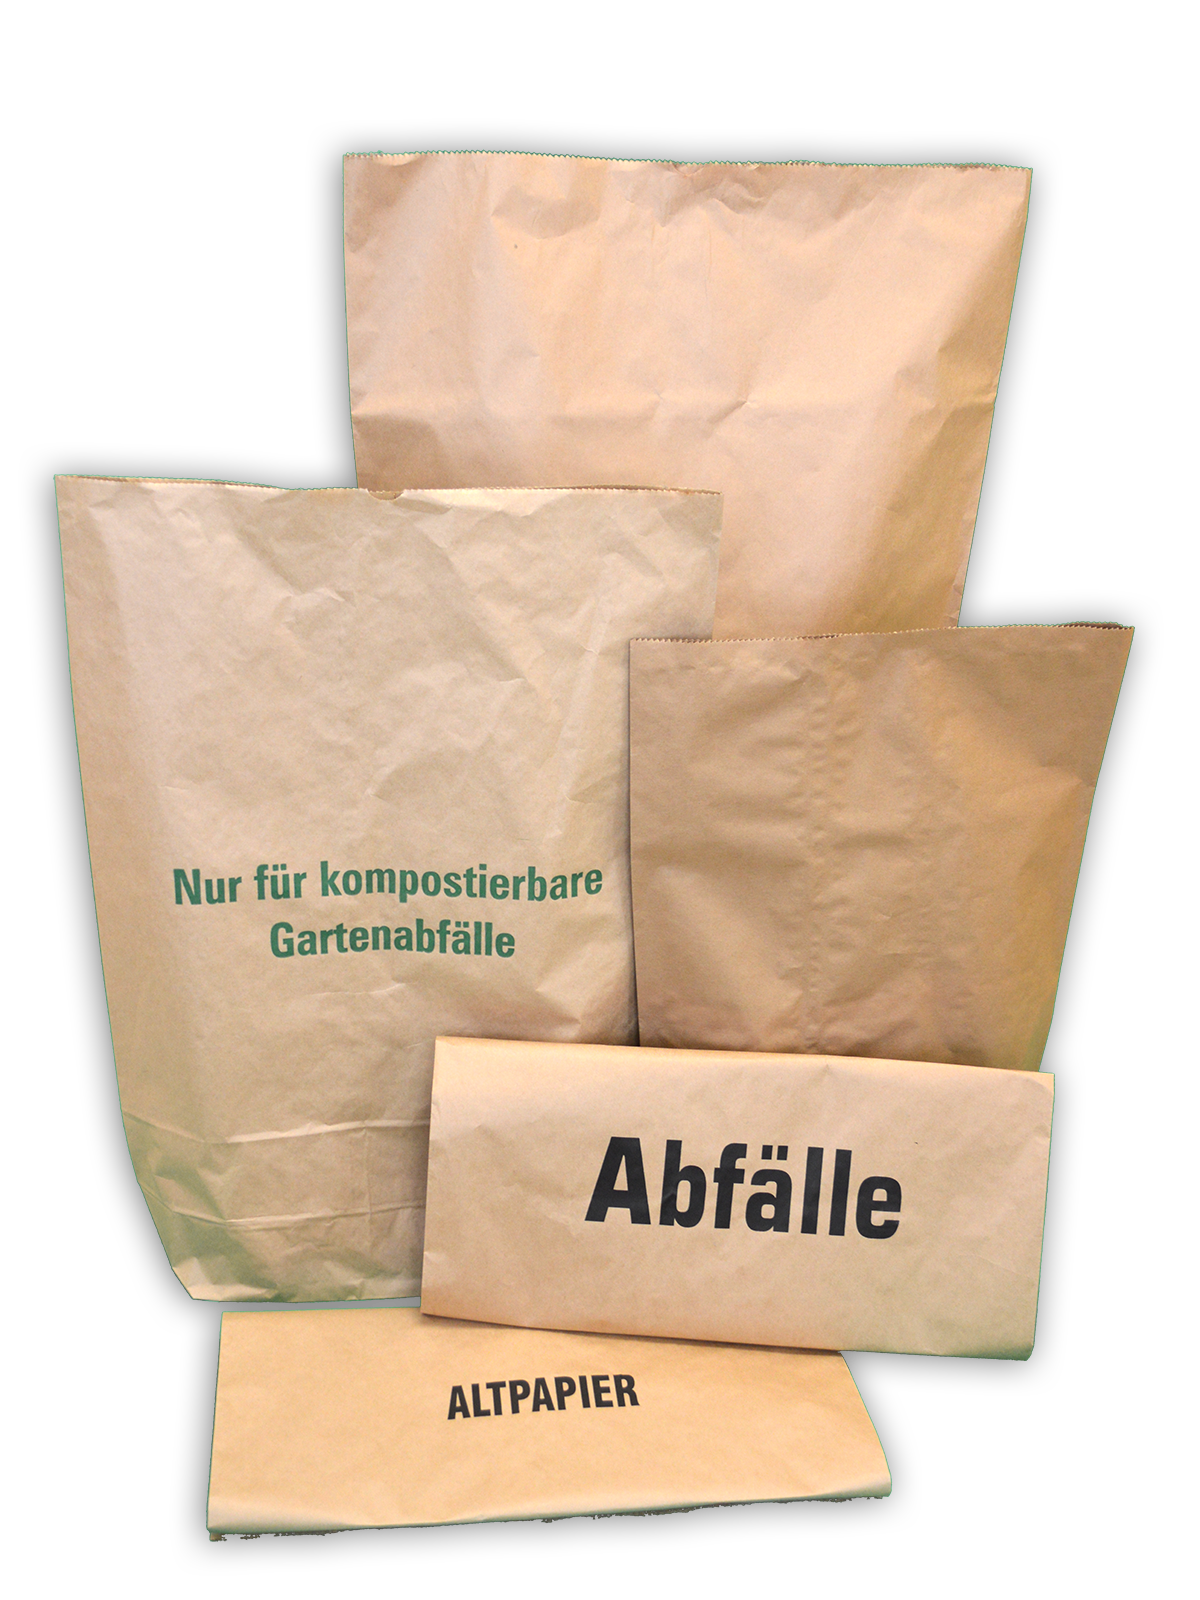 10 x Jufol Öko Papier Müllsack Bio Bag a 3 Stück/Pack  a 60 Liter 